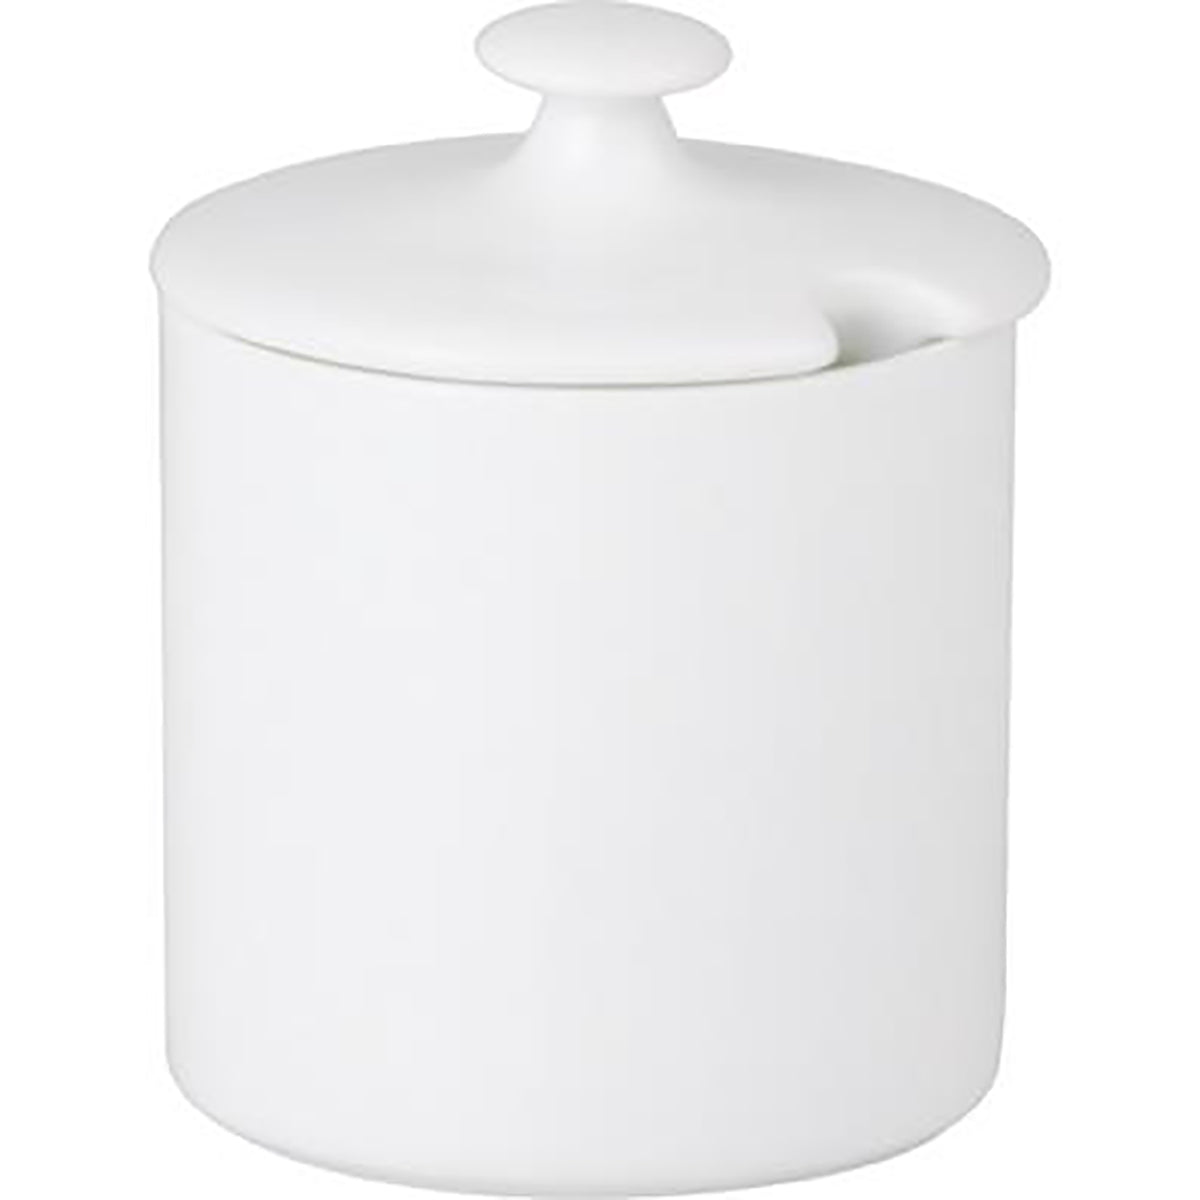 94143 Royal Porcelain Chelsea Condiment Pot W/Lid 0.1Lt (4050) Tomkin Australia Hospitality Supplies